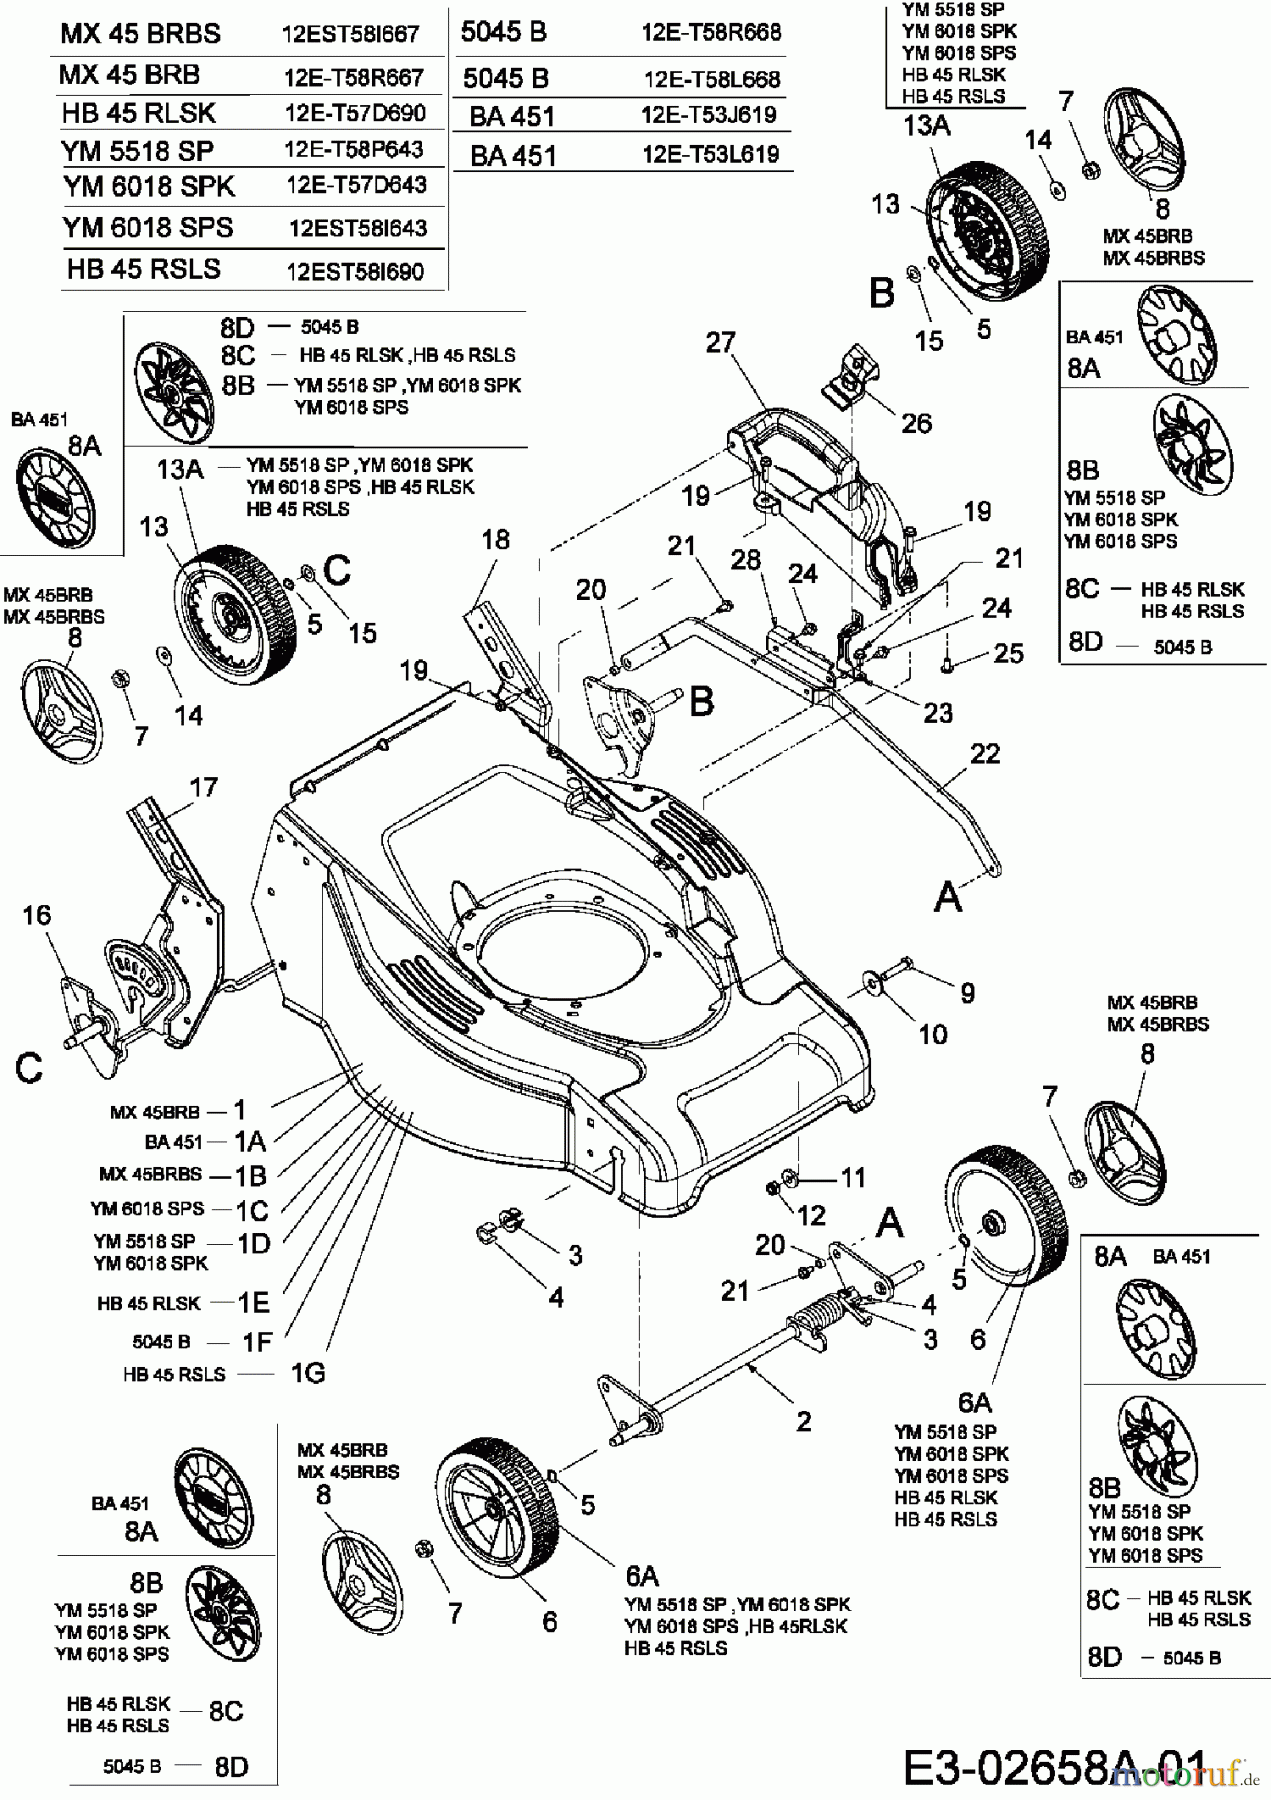  Gutbrod Motormäher mit Antrieb HB 45 RSLS 12EST58I690  (2006) Räder, Schnitthöhenverstellung